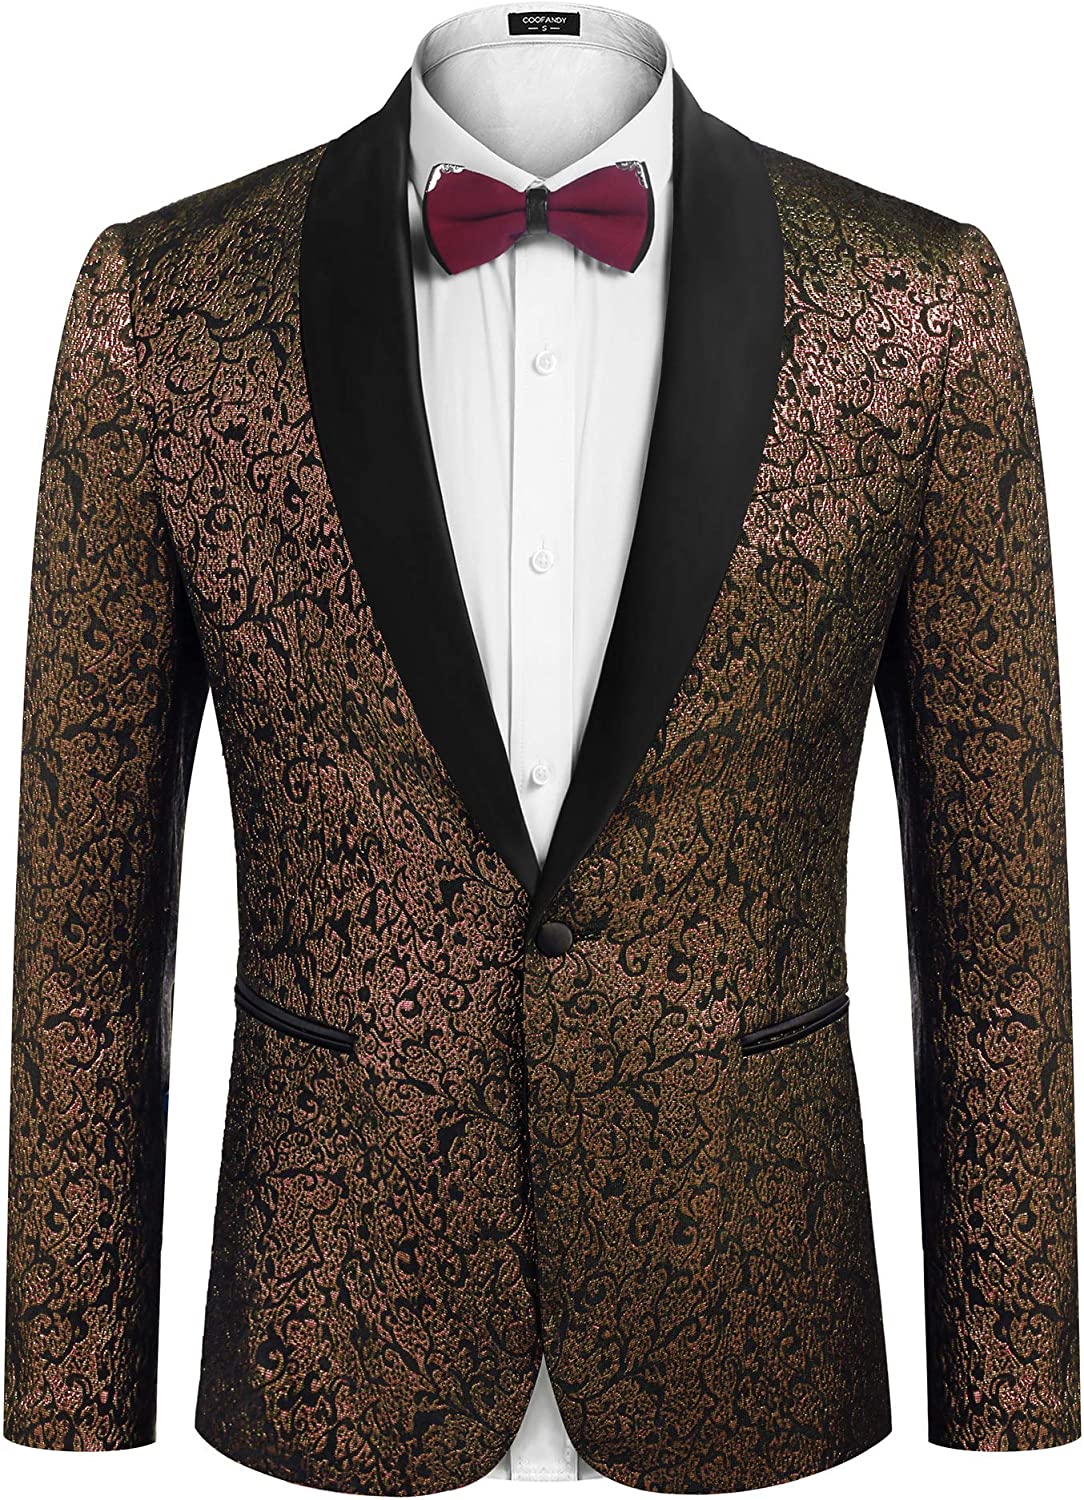 COOFANDY Men's Floral Tuxedo Jacket Jacquard Suit Jacket Slim Fit Blazer  for Wed